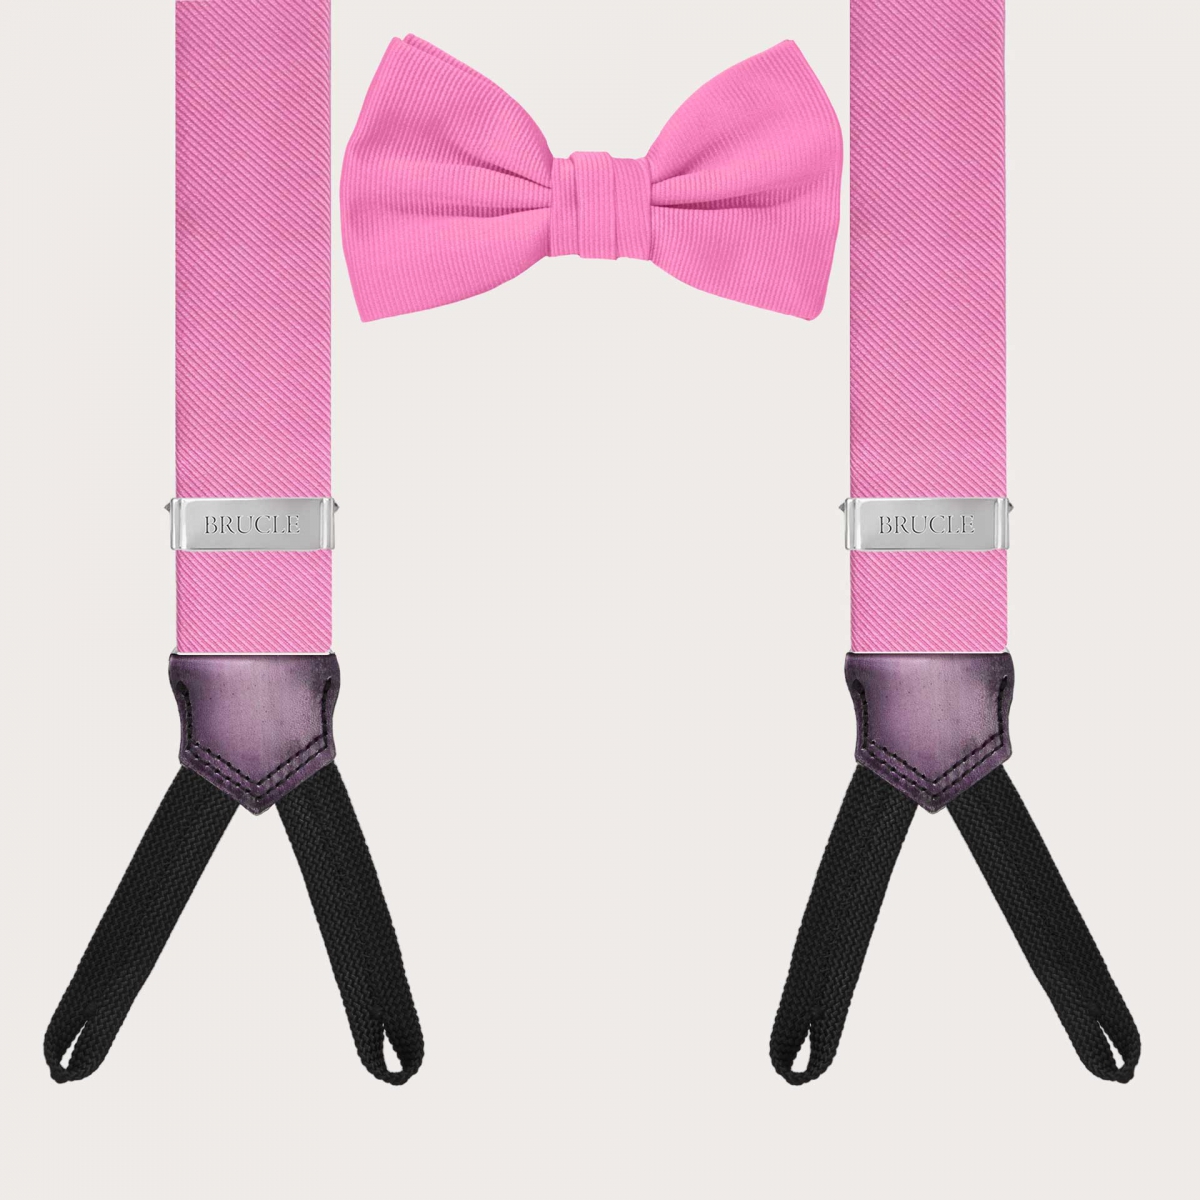 Clásico y original set de tirantes para botones y pajarita rosa coordinada en seda jacquard.